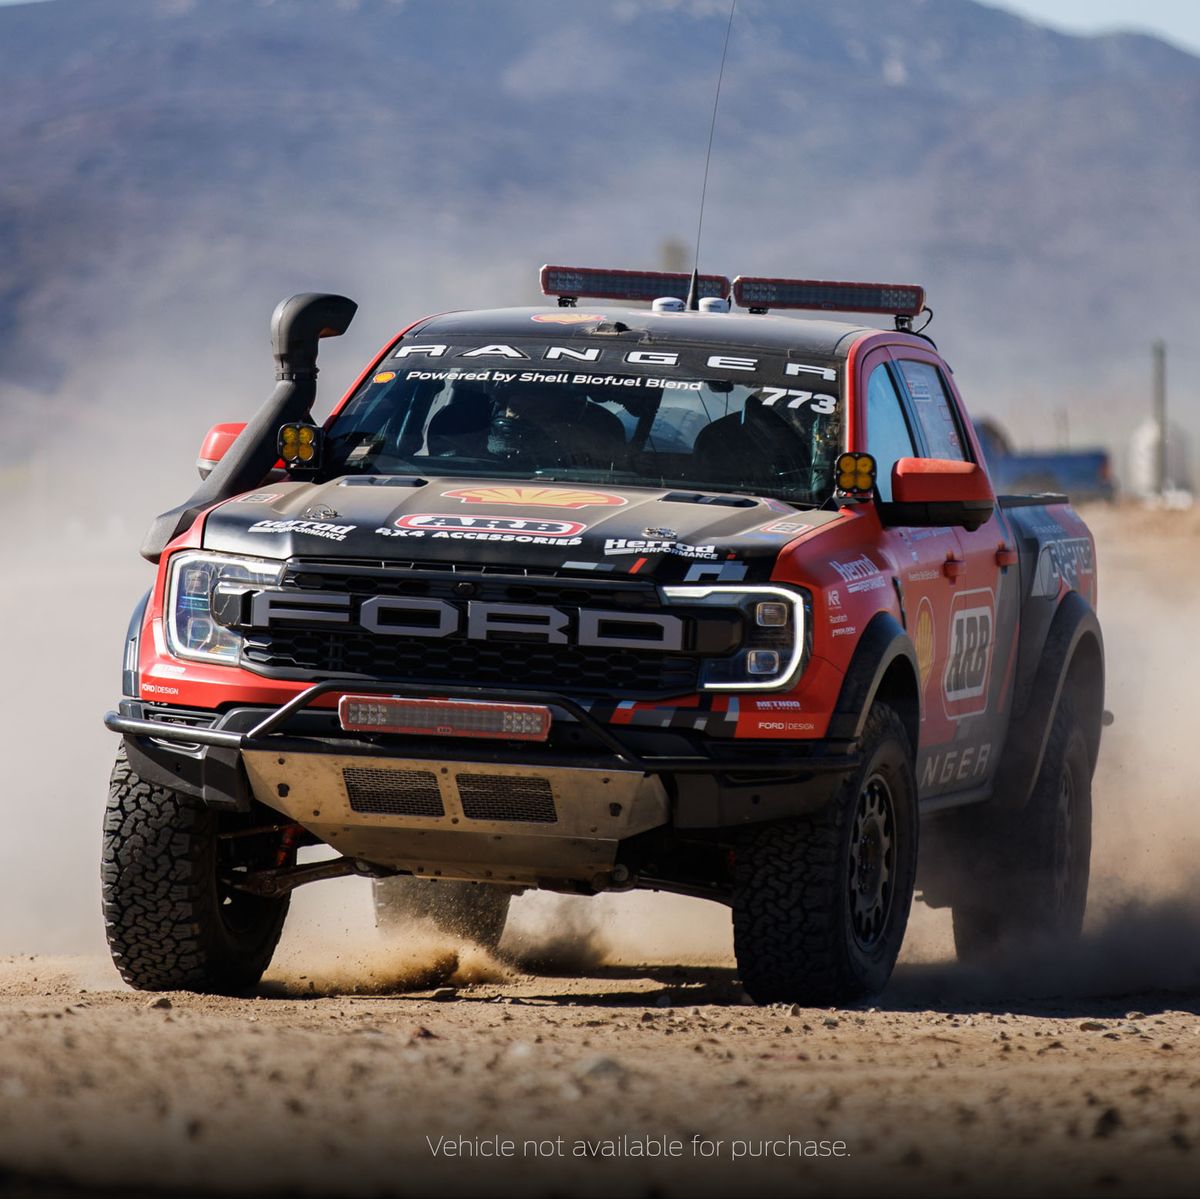 Ford Ranger Raptor Drives Back Home After Surviving Baja 1000